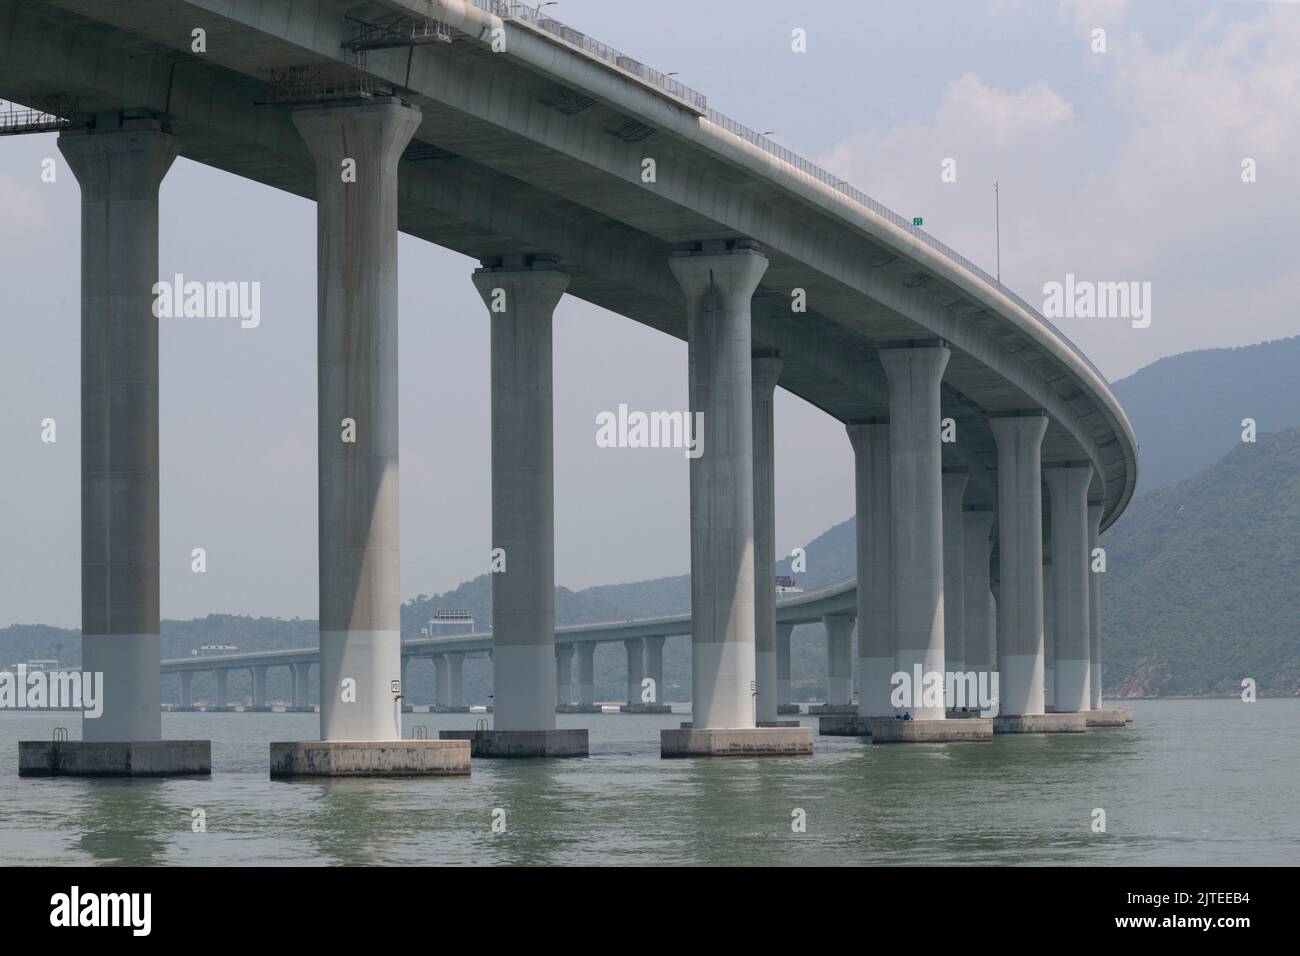 Tramo elevado de la autopista, Hong Kong - Zhuhai - Puente de Macao (HZMB), tramo de Hong Kong, al oeste de Lantau, en el delta del río Perla, Guangdong, China Foto de stock